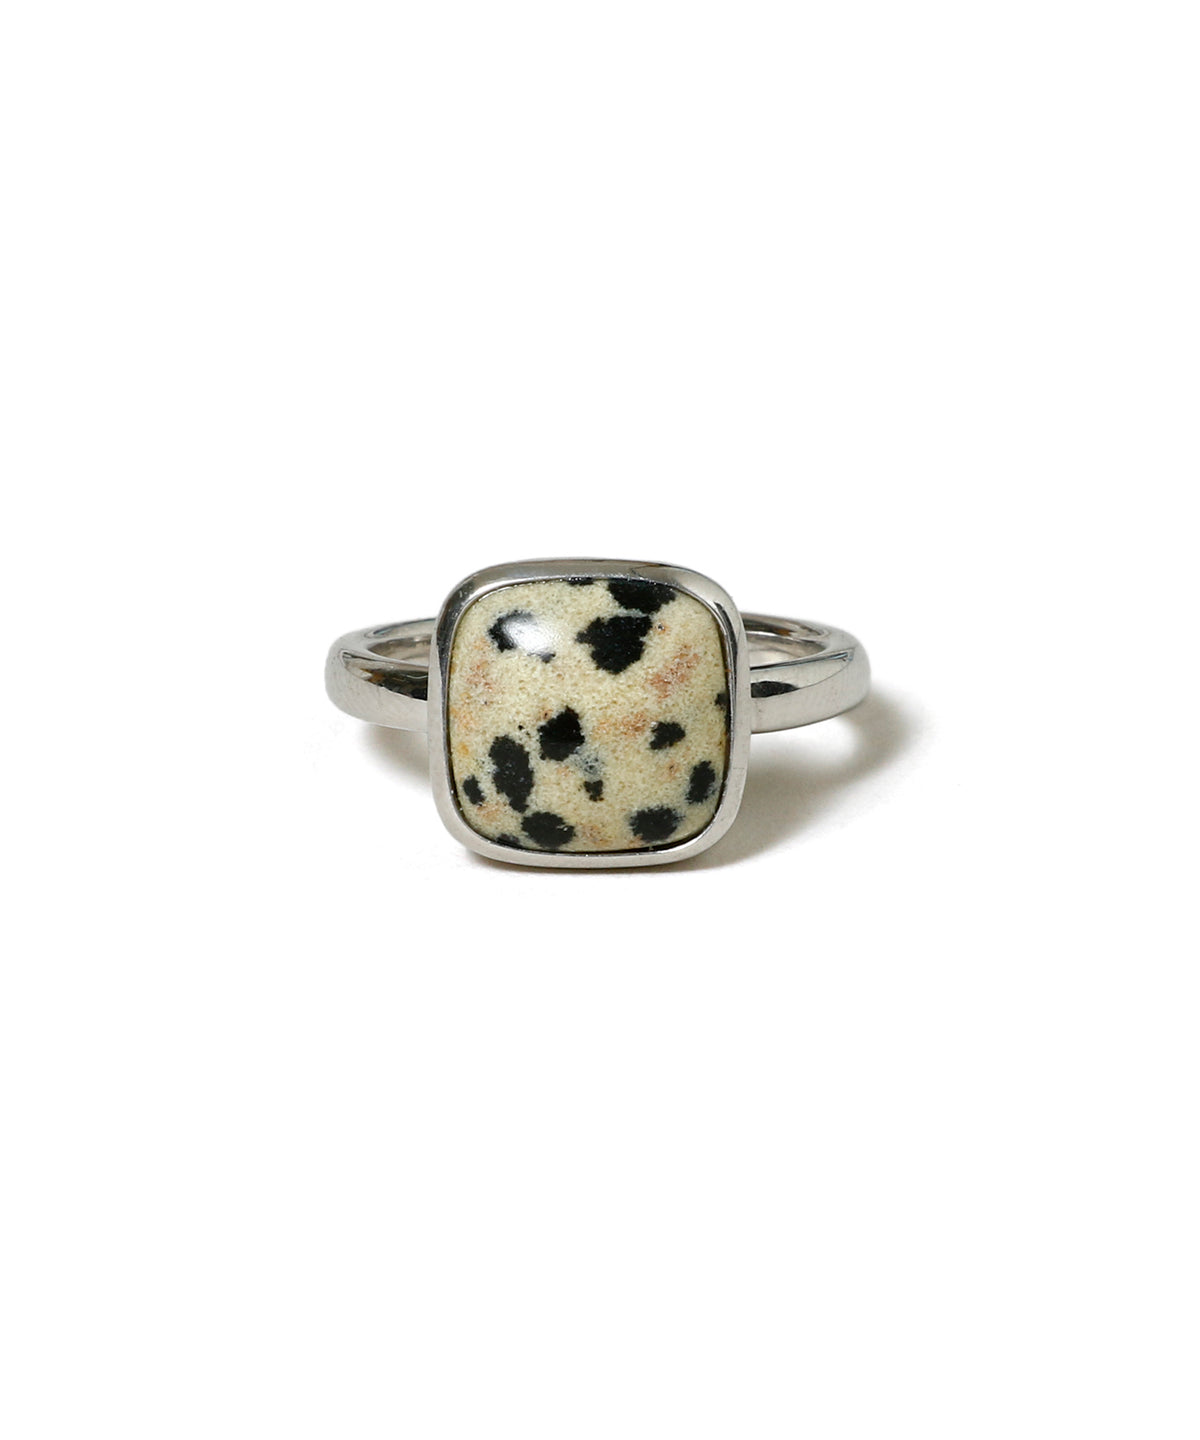 Square Cabochon Dalmatian Stone Ring